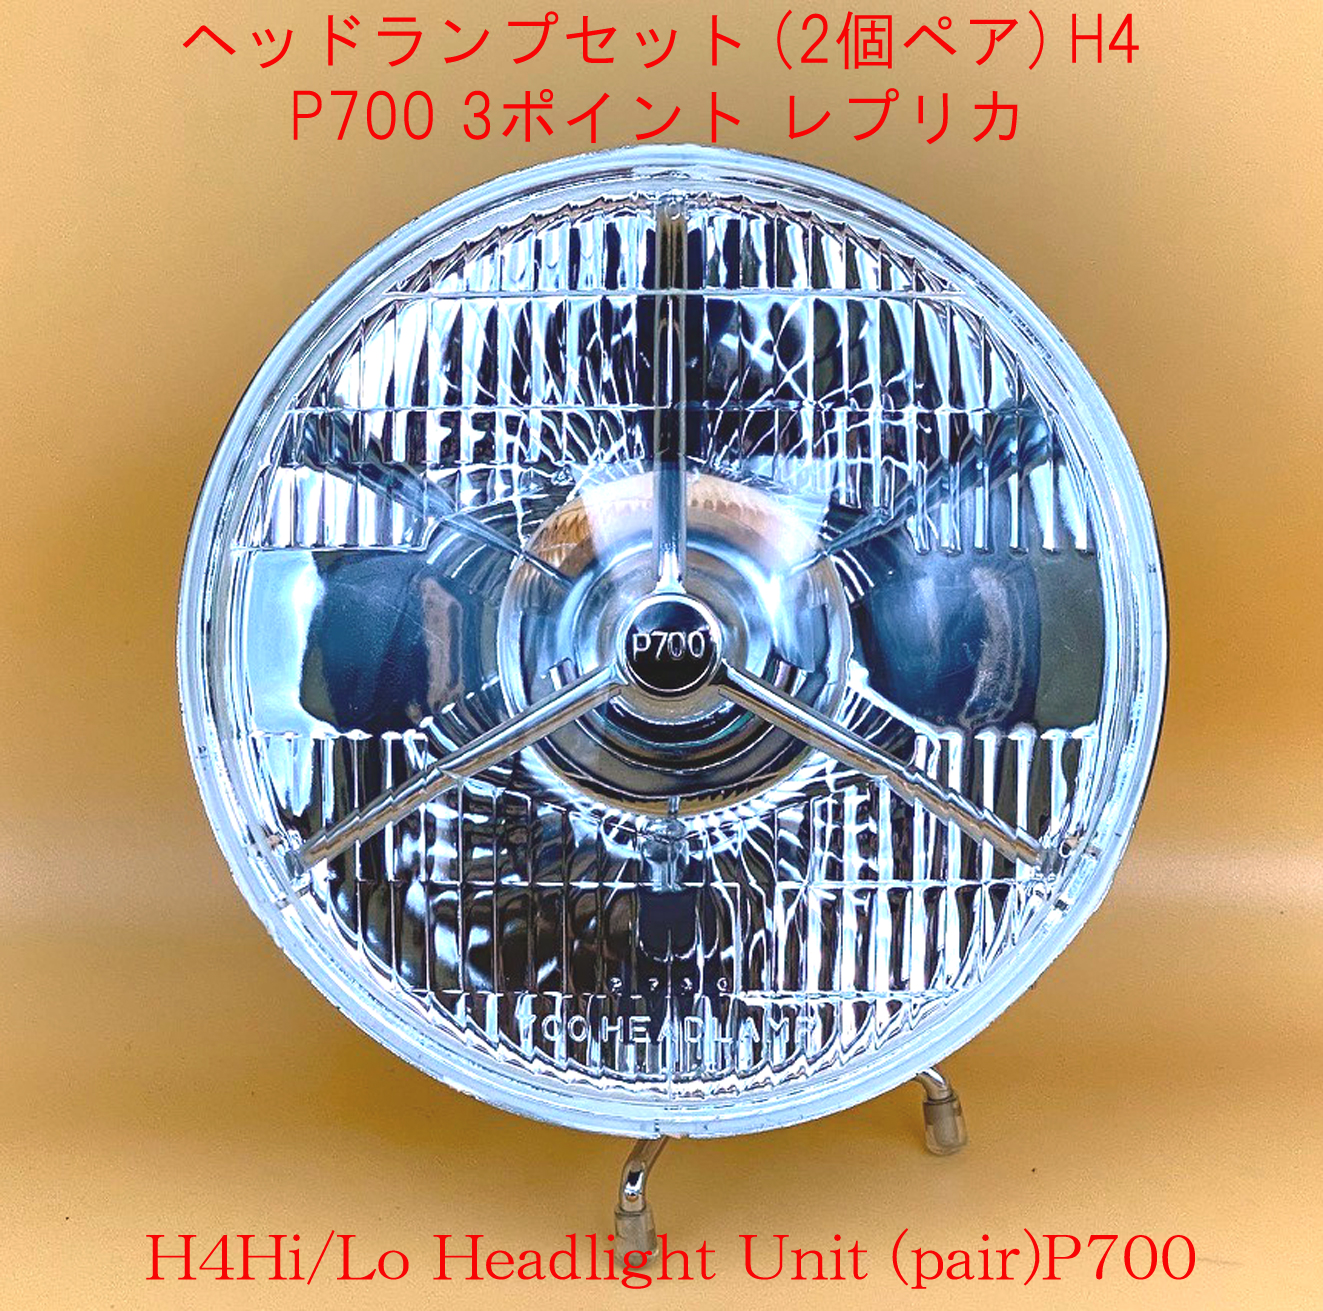 ヘッドランプセット (2個ペア) H4 P700 3ポイント レプリカ パイロットランプ付｜{ケーターハムドットJP}